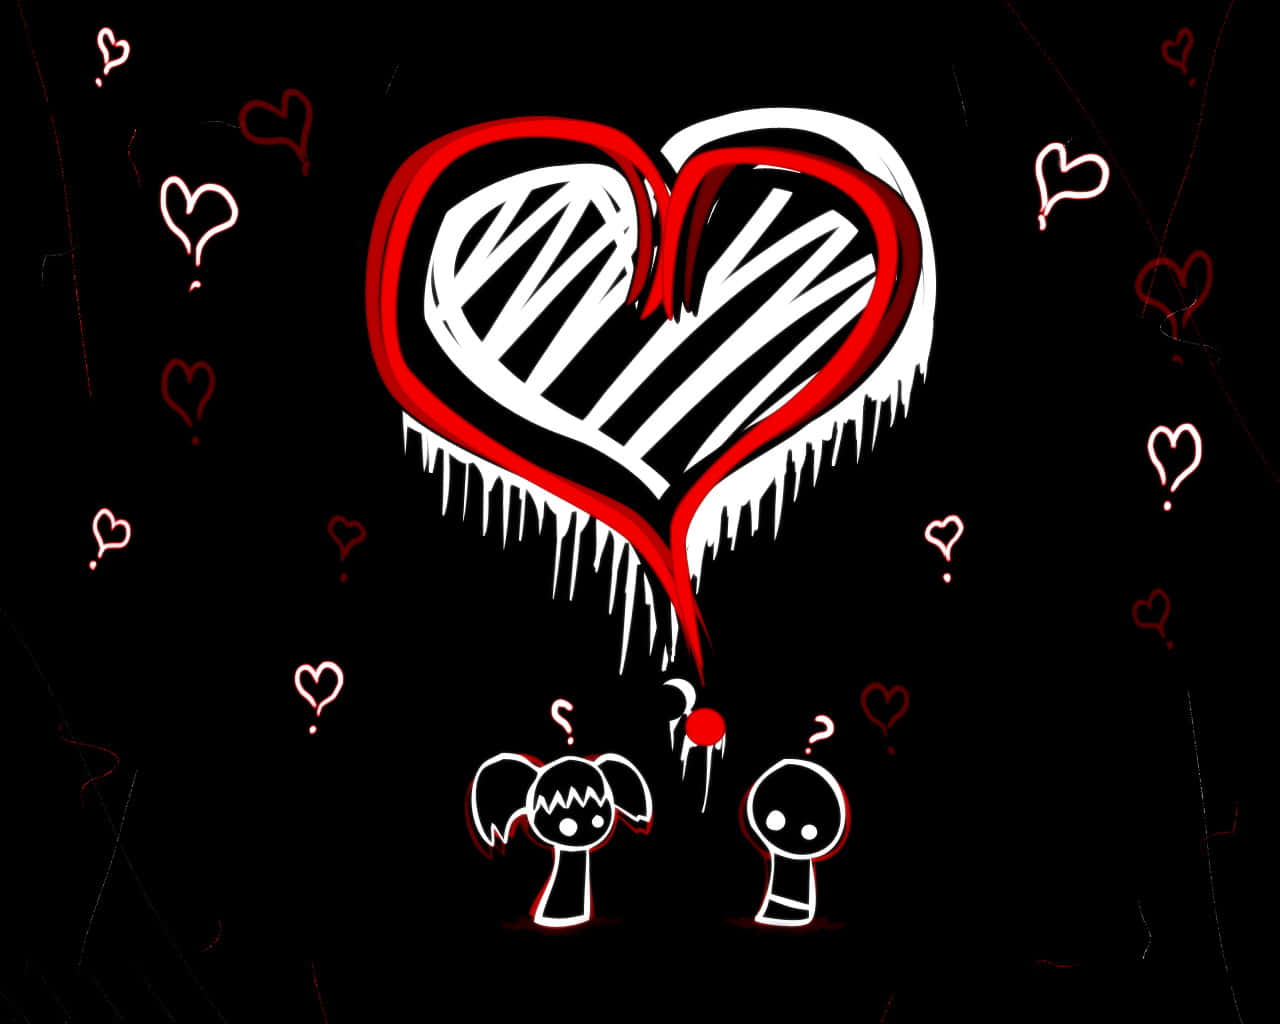 En tegning af et hjerte med et par mennesker der omfavner hinanden. Wallpaper